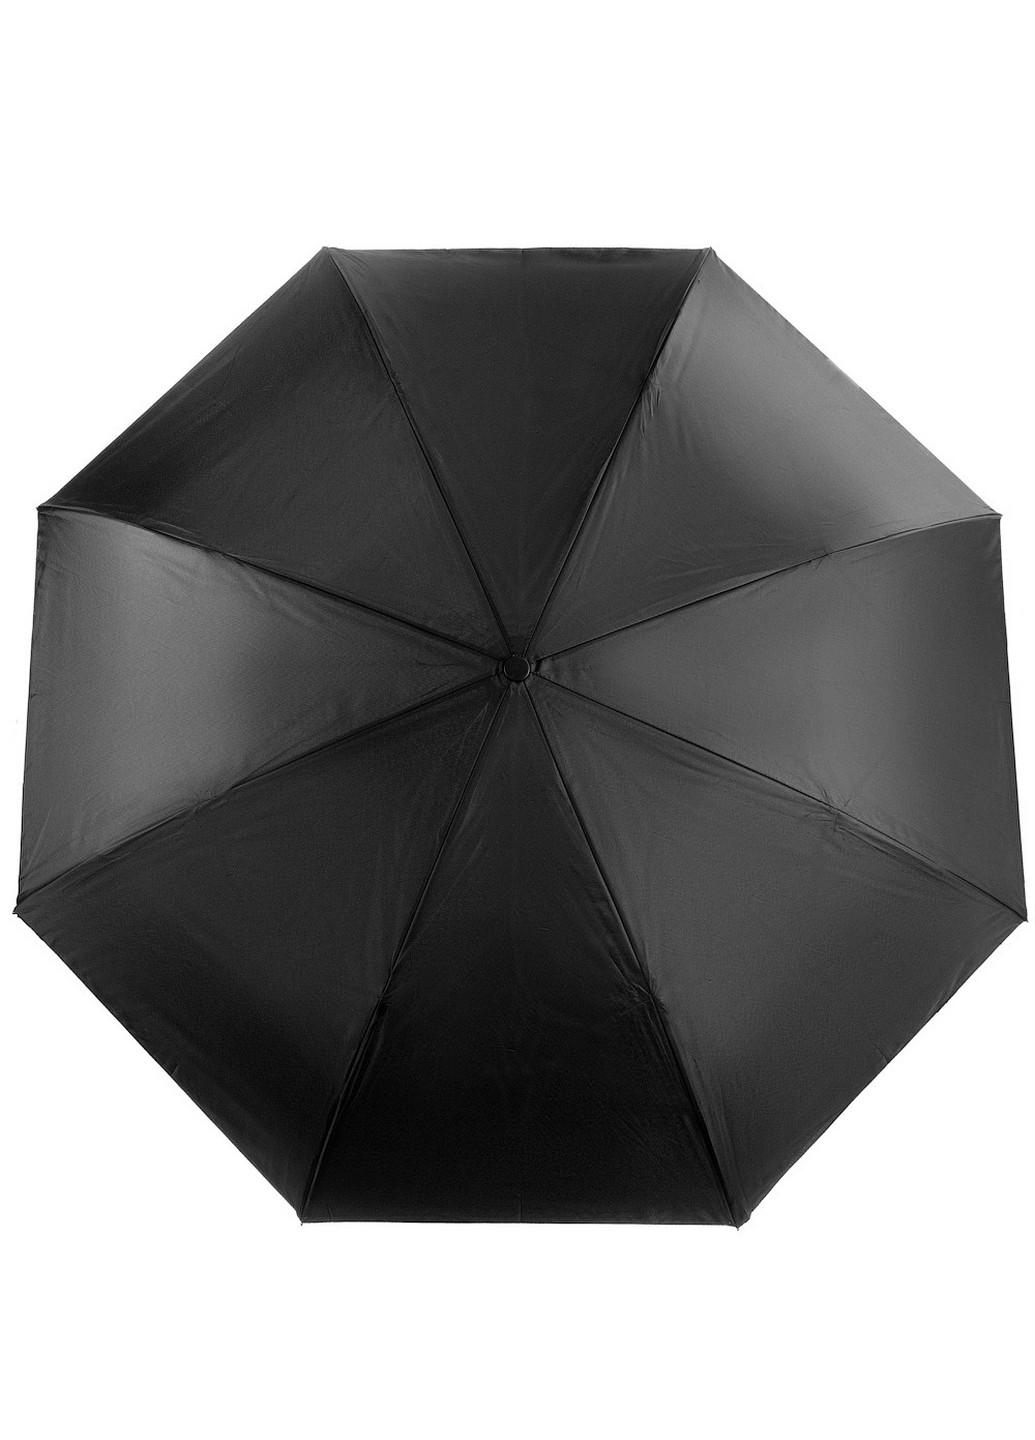 Женский зонт-трость механический 108 см ArtRain (260330815)